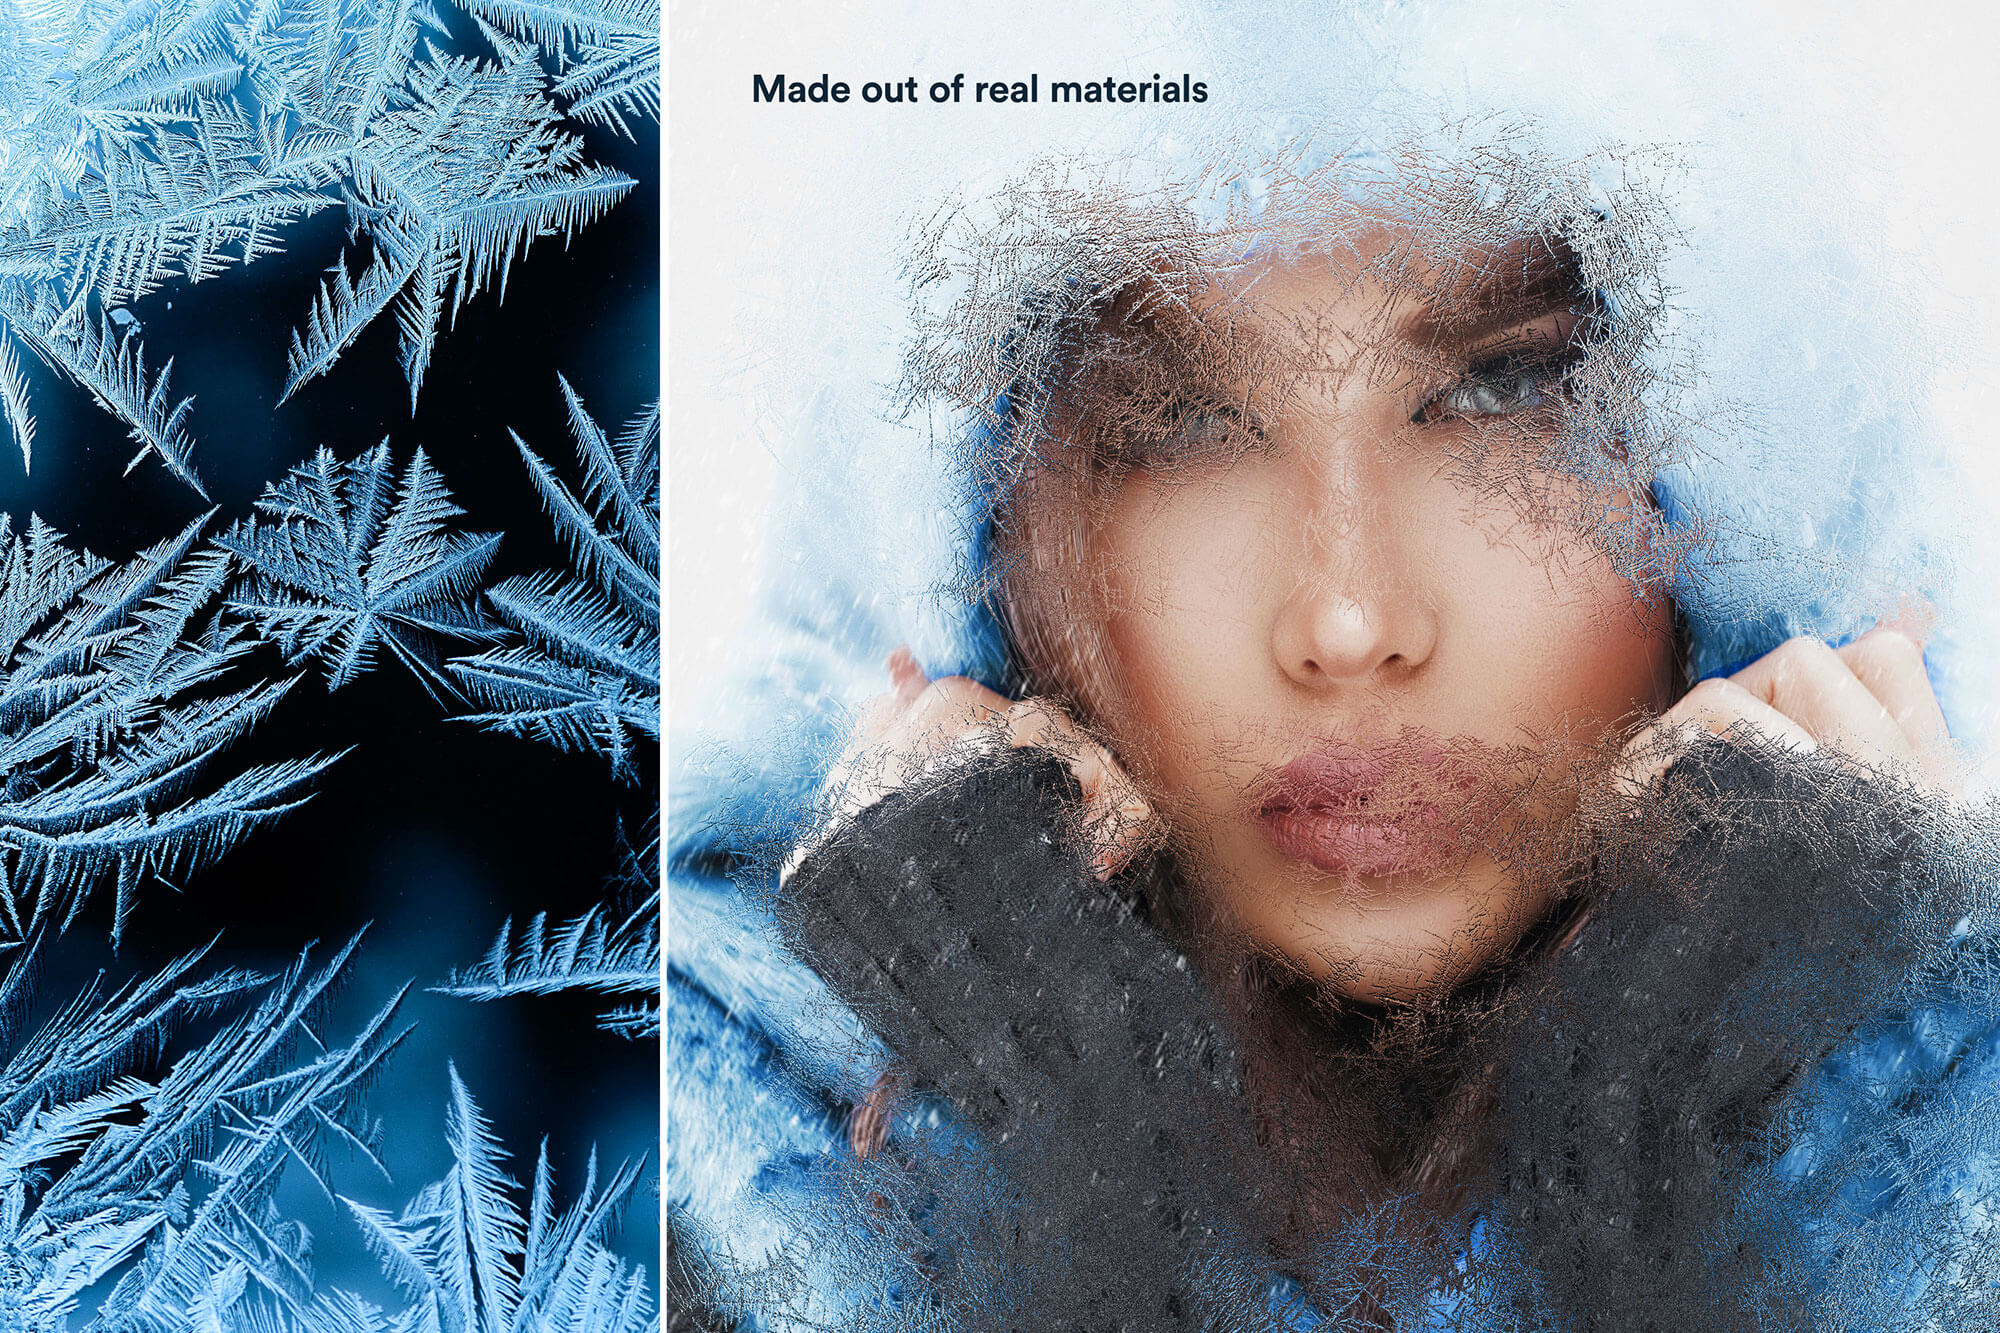 潮流逼真下雨下雪磨砂玻璃模糊图片效果PS动作素材 Hyper Realistic Glass Effects 插件预设 第1张